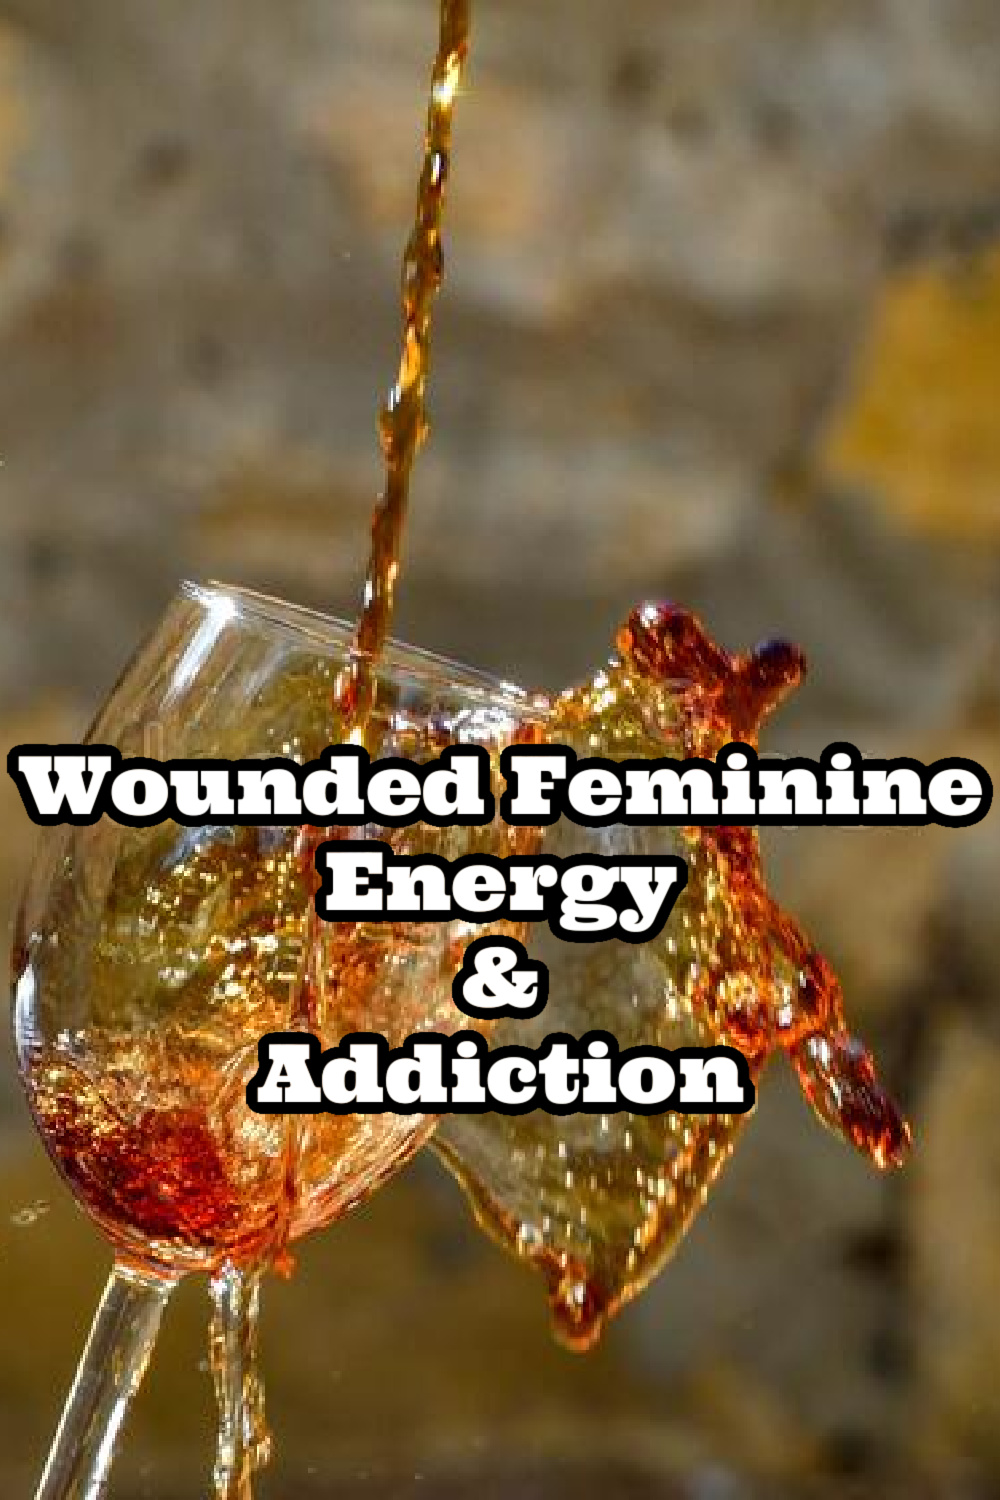 Wounded Feminine Energy & Addiction | Wounded Masculine & Feminine Polarity